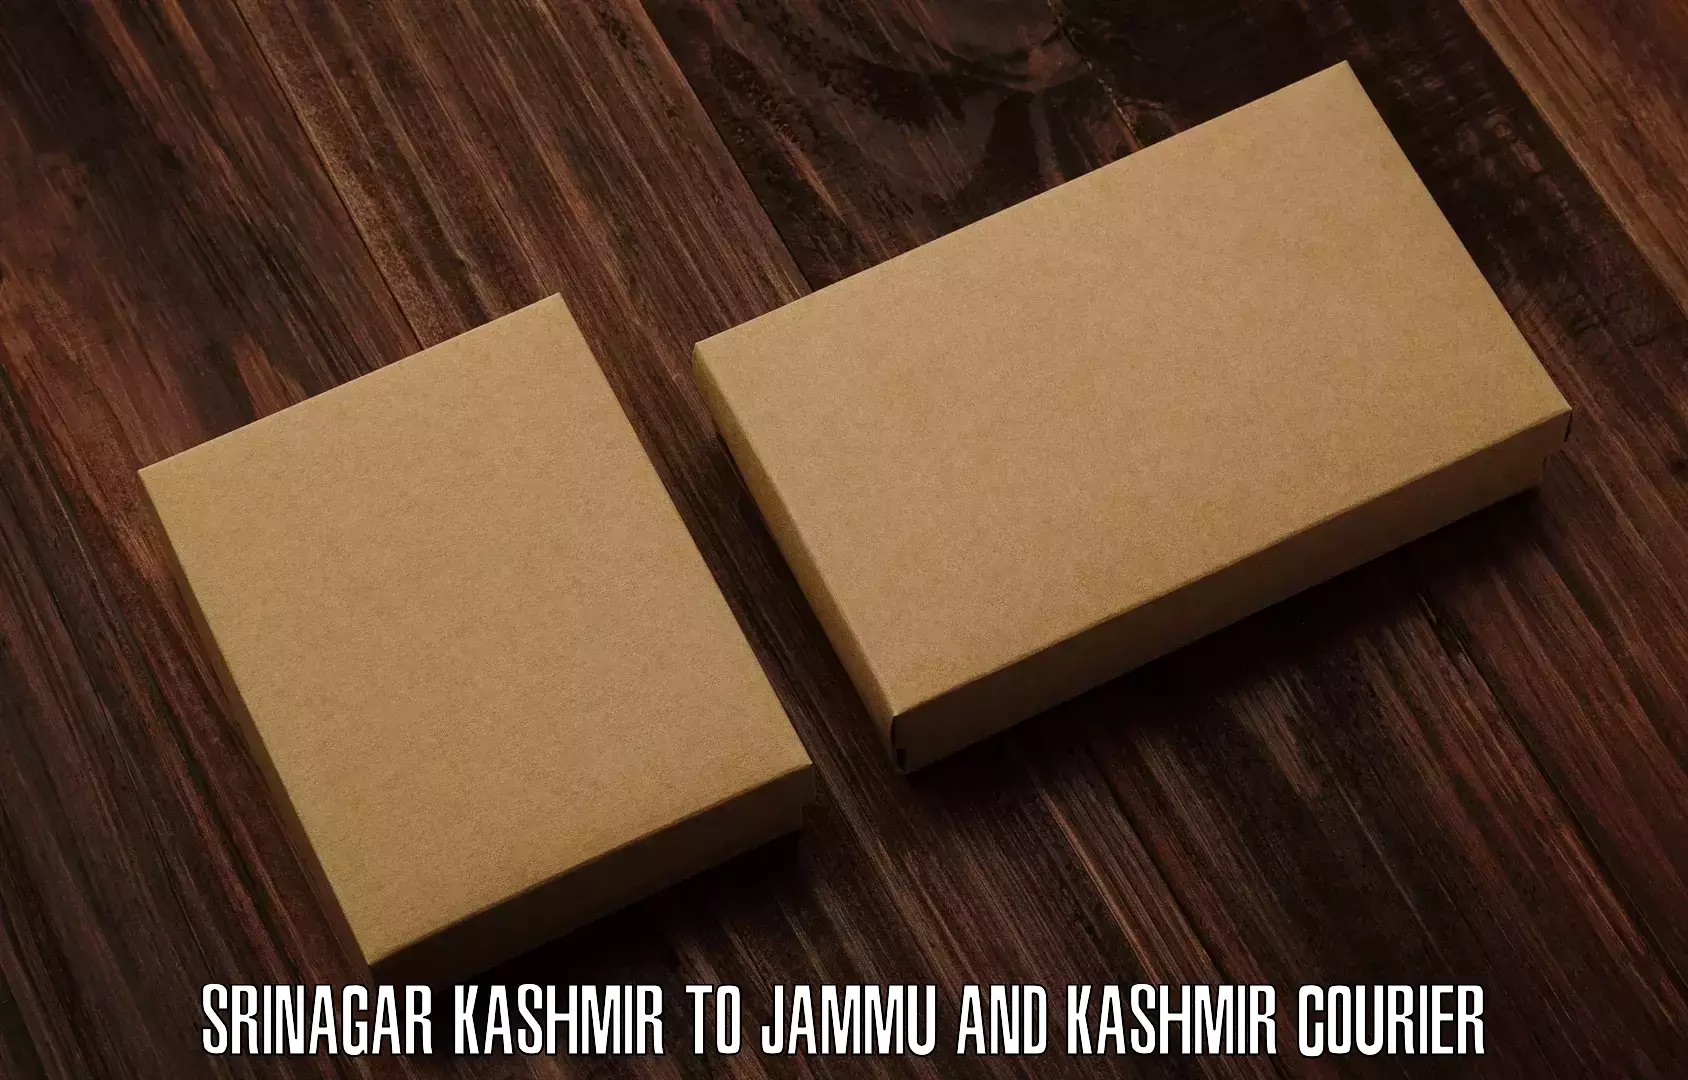 Lightweight courier Srinagar Kashmir to University of Kashmir Srinagar